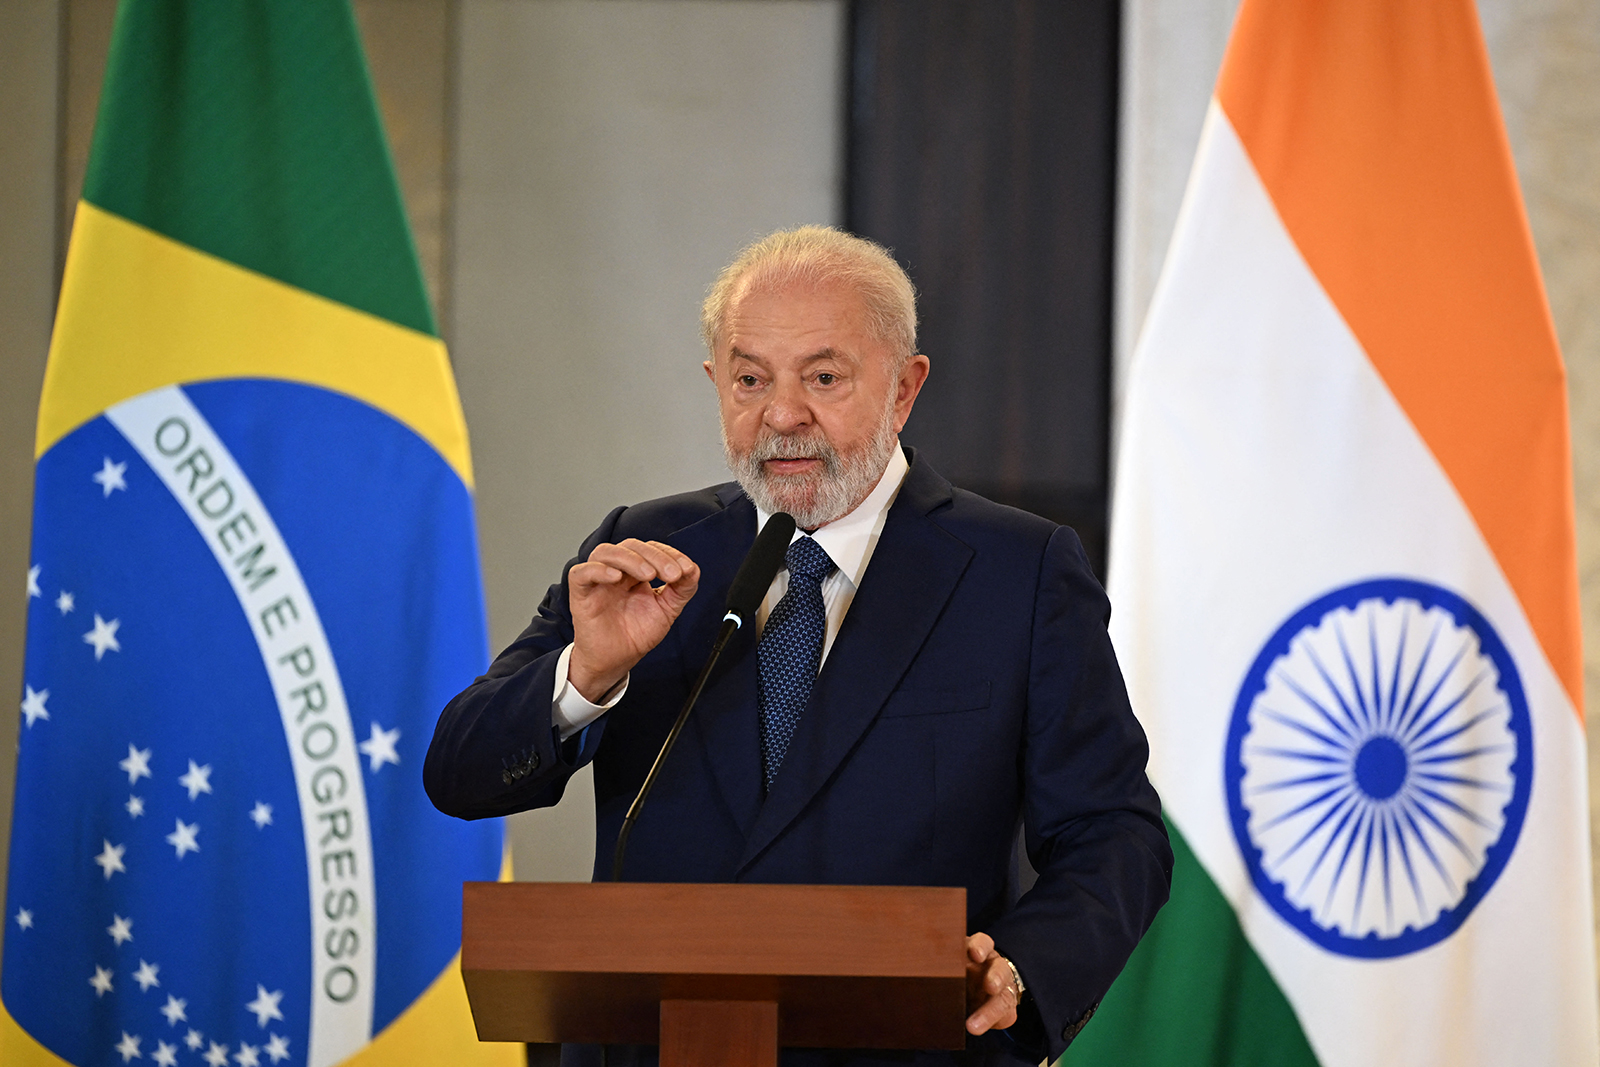 Luiz Inacio Lula da Silva speaks at a press conference in New Delhi on September 11.